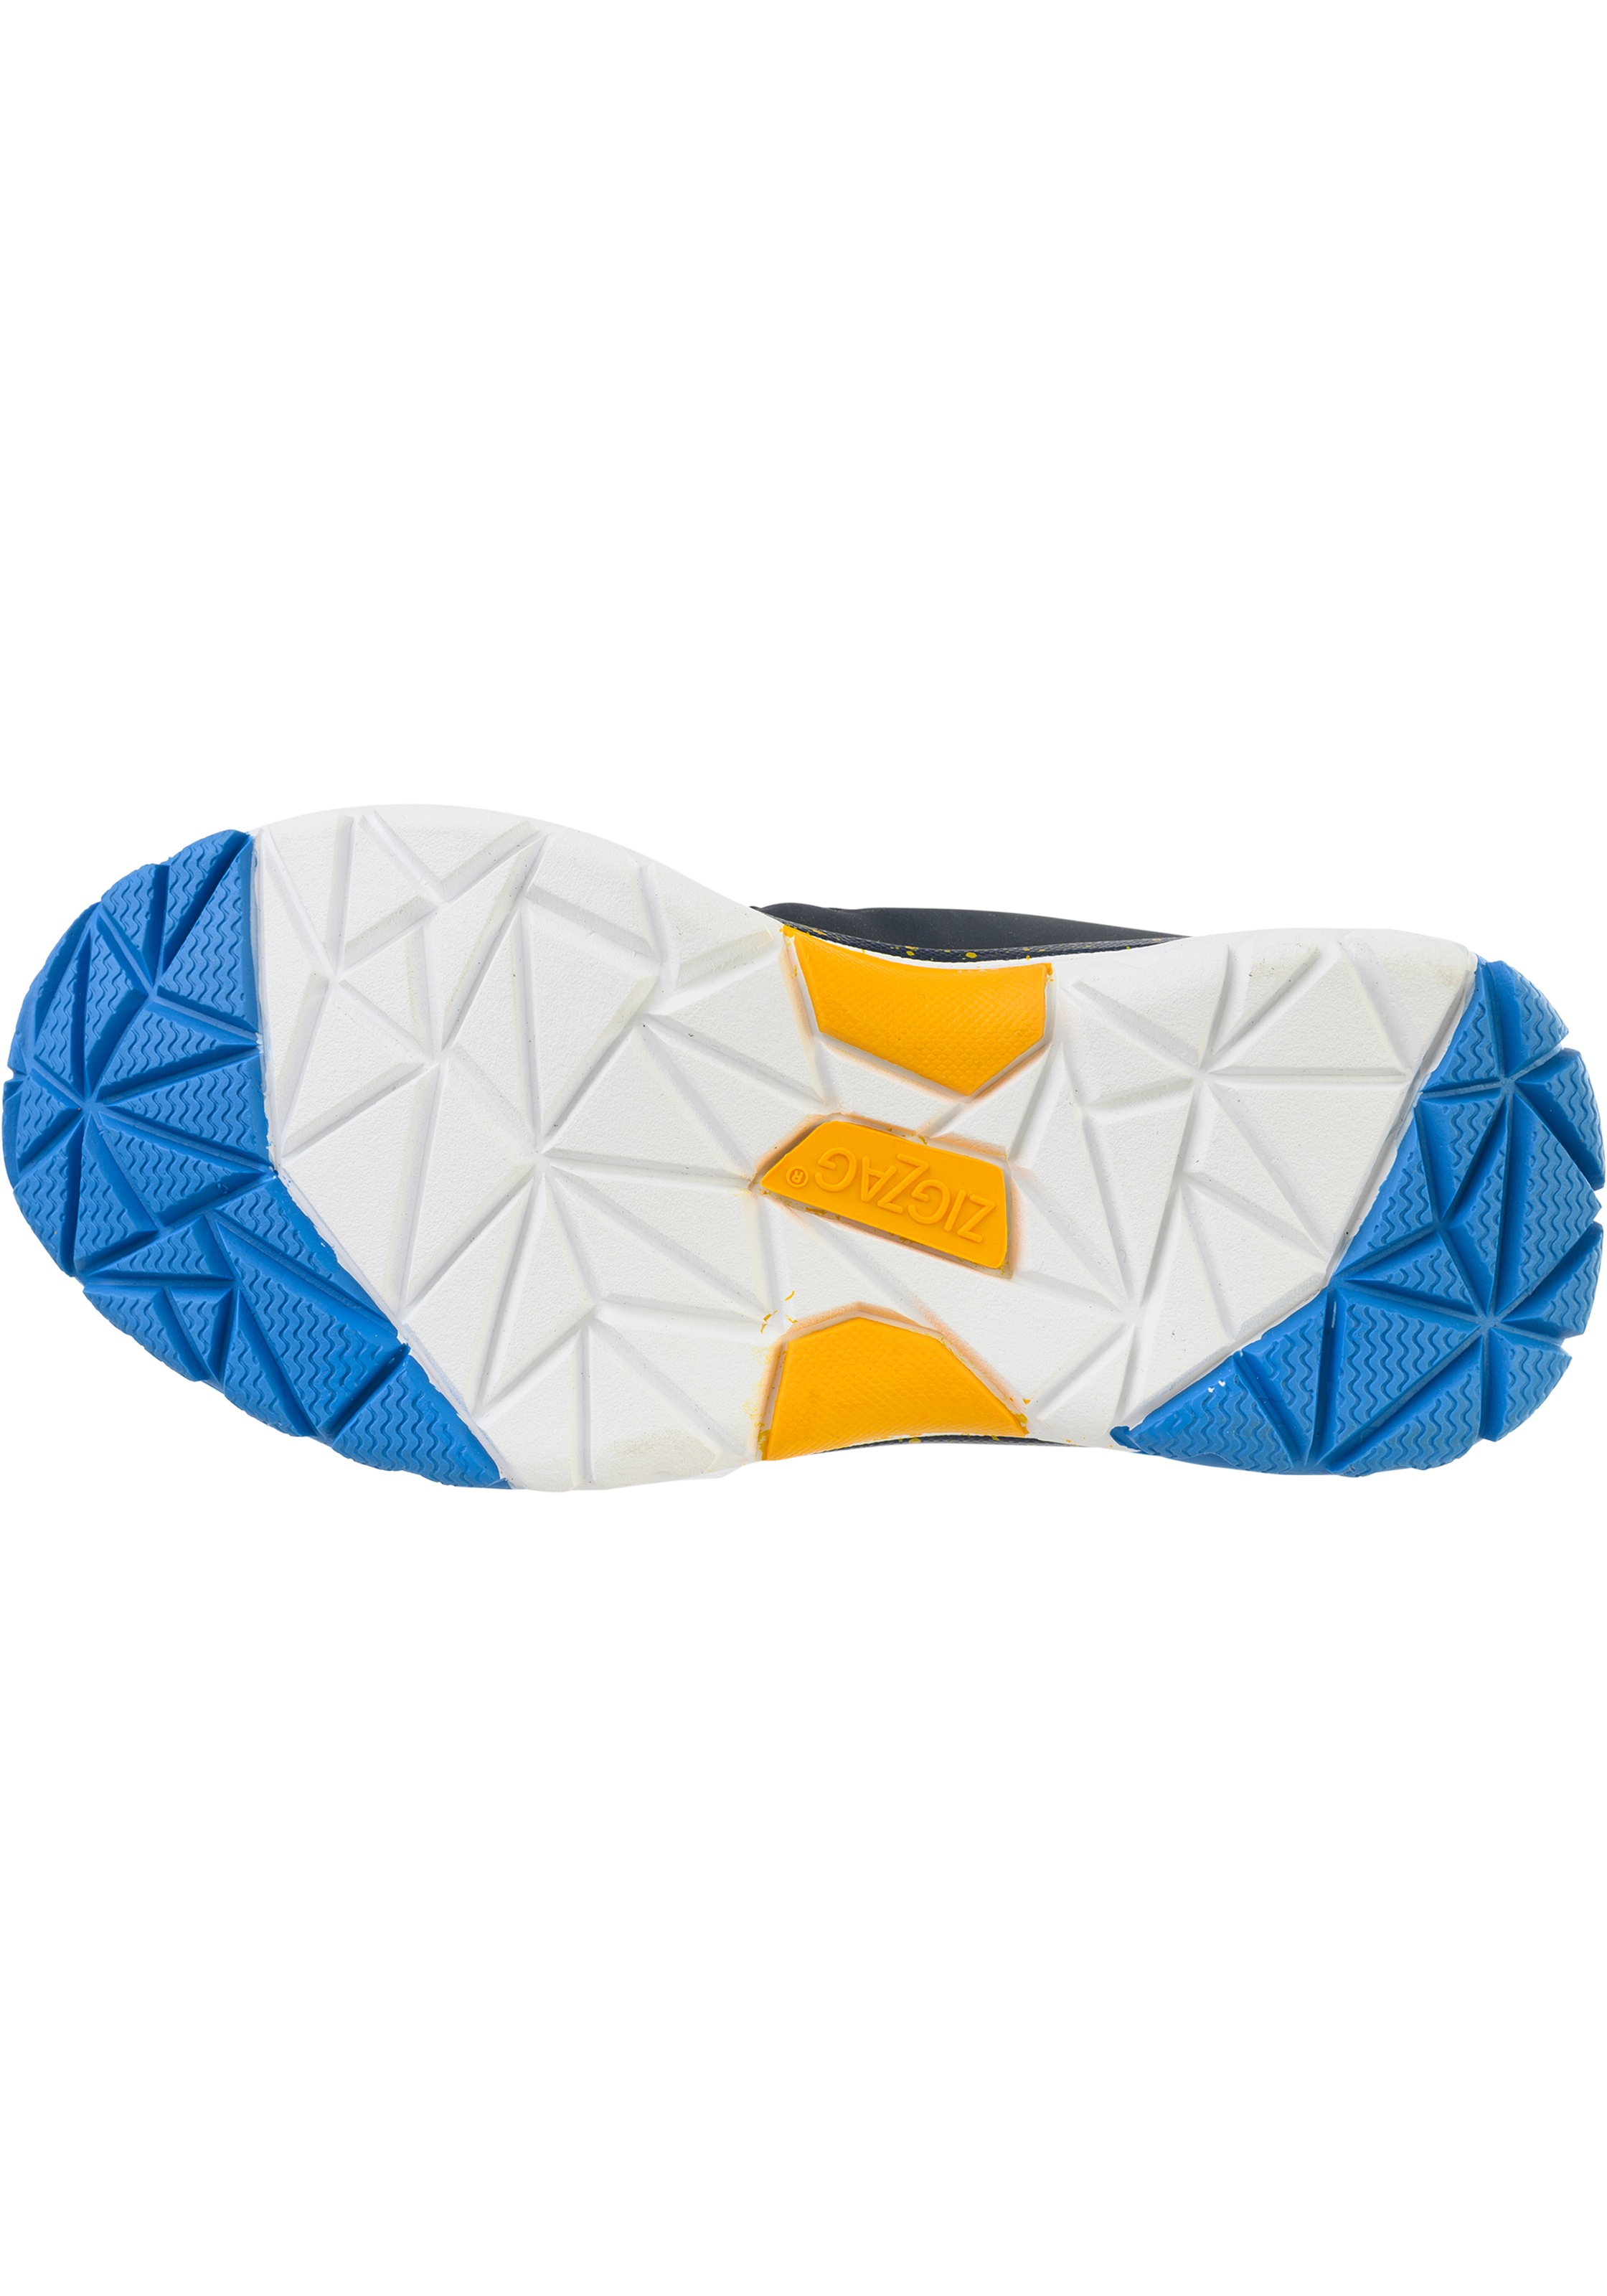 ZIGZAG Stiefel »GINDEN Waterproof«, mit praktischem Klettverschluss